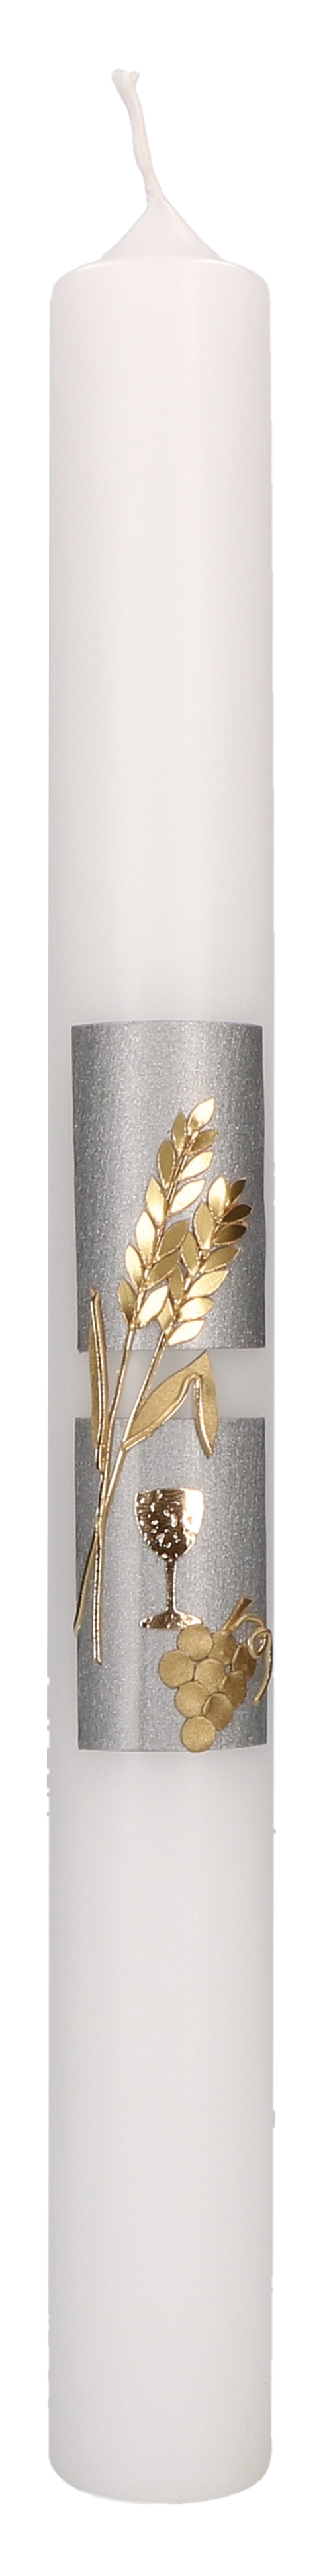 Kommunionkerze mit Wachsmotiv - Kelch, Ähren und Trauben in Gold auf silbernem Hintergrund